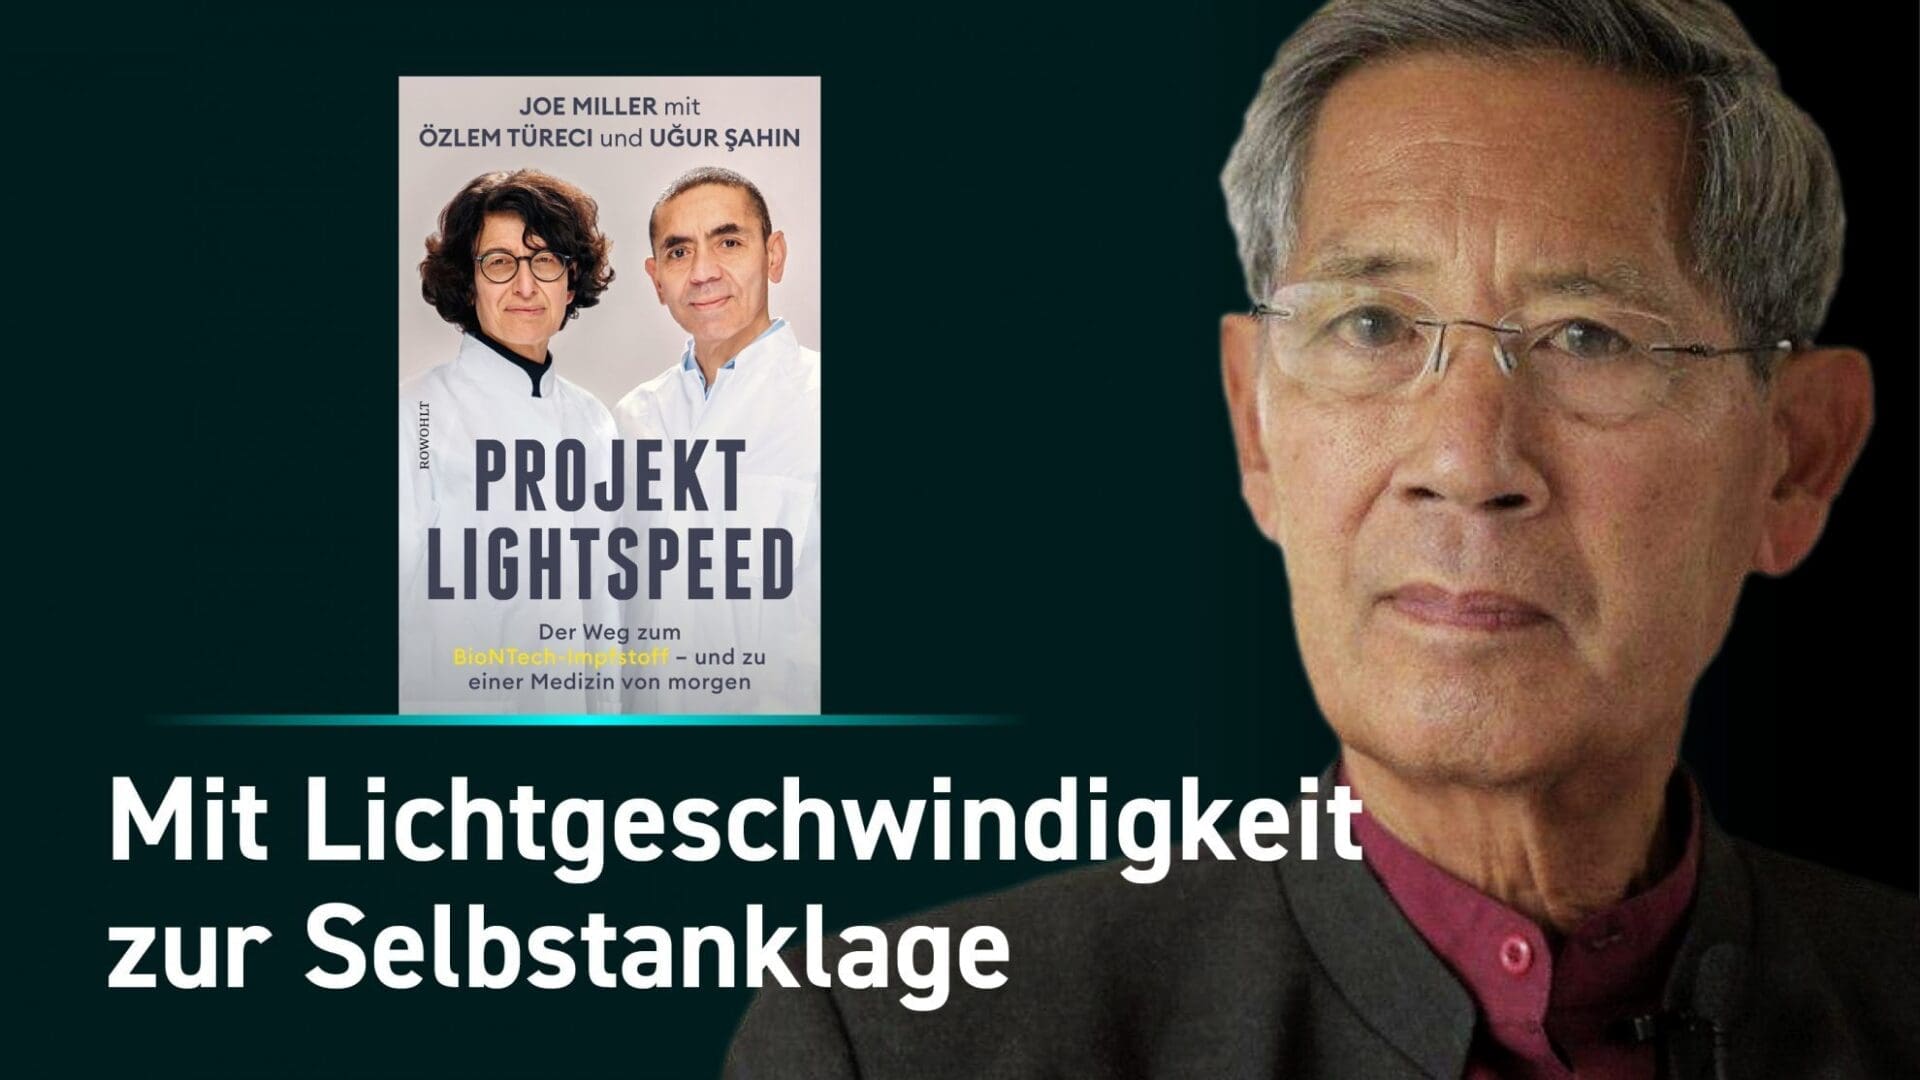 prof-bhakdi-erzaehlt-ueber-das-verraeterische-buch-„projekt-lightspeed“-der-biontech-gruender